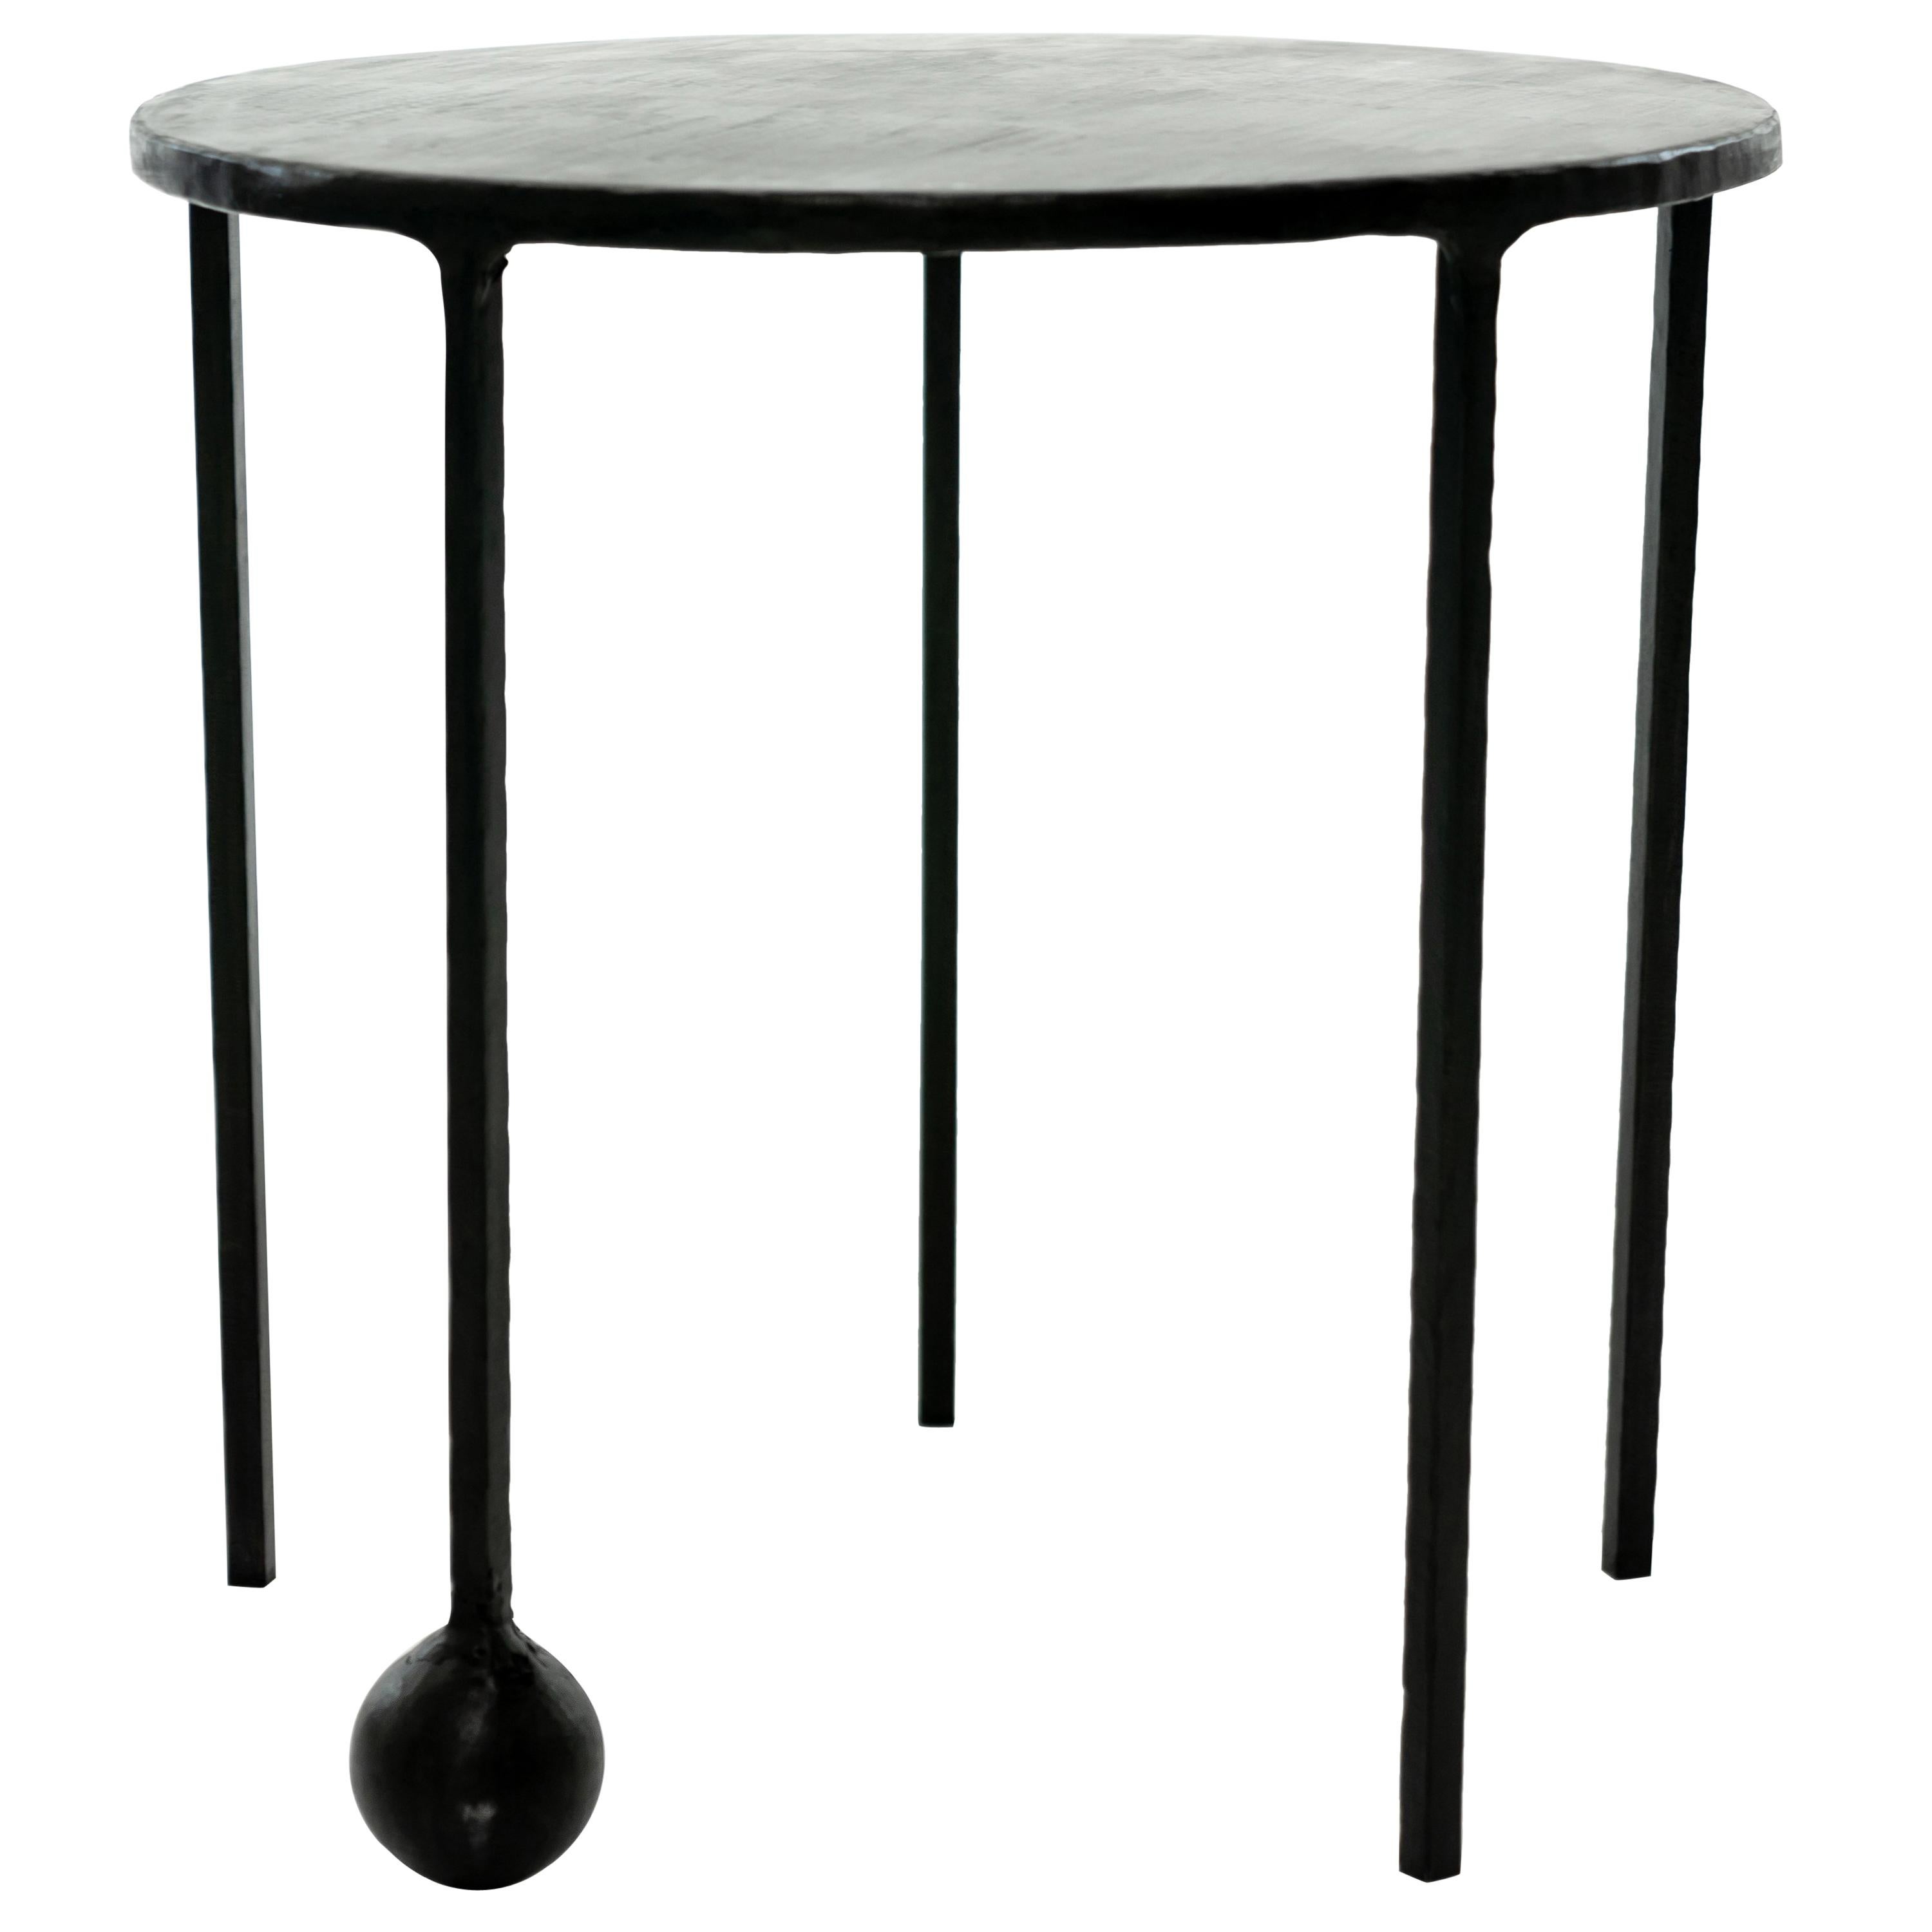 Table d'appoint circulaire/table d'appoint noire moderne/contemporaine en acier noirci sculpté à la main